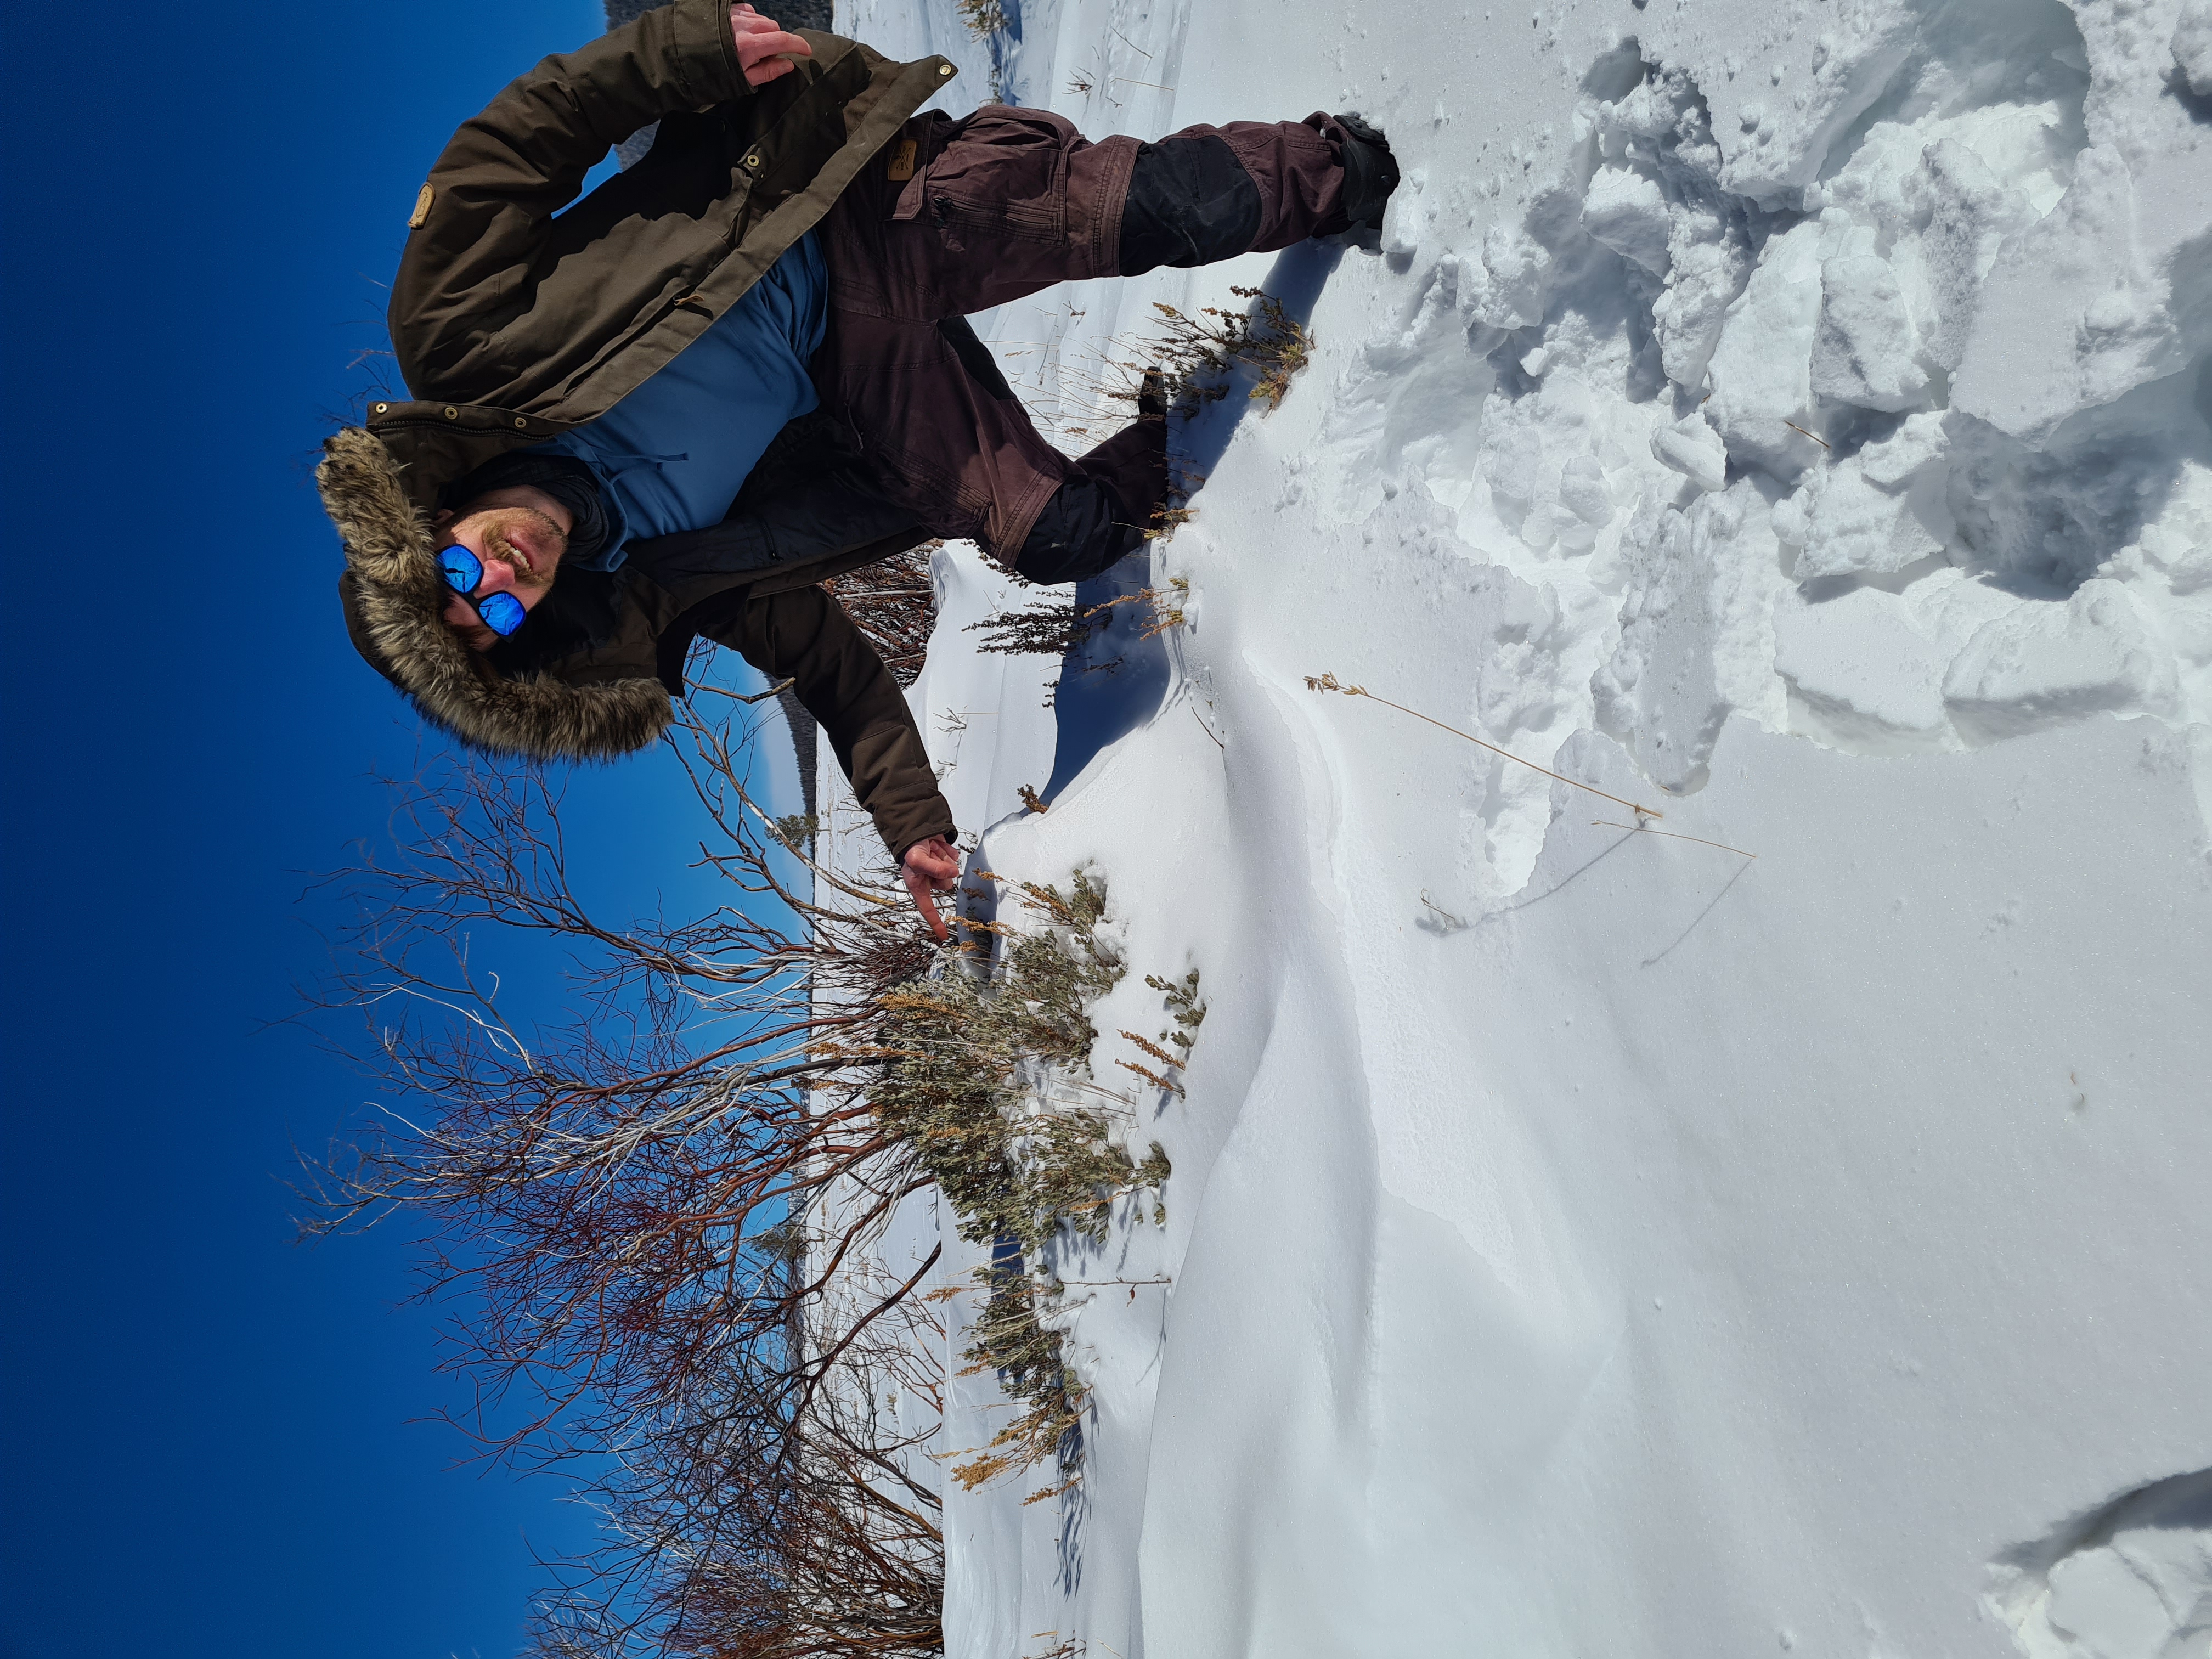 Lukas-pointing-at-sagebrush-in deep-snow